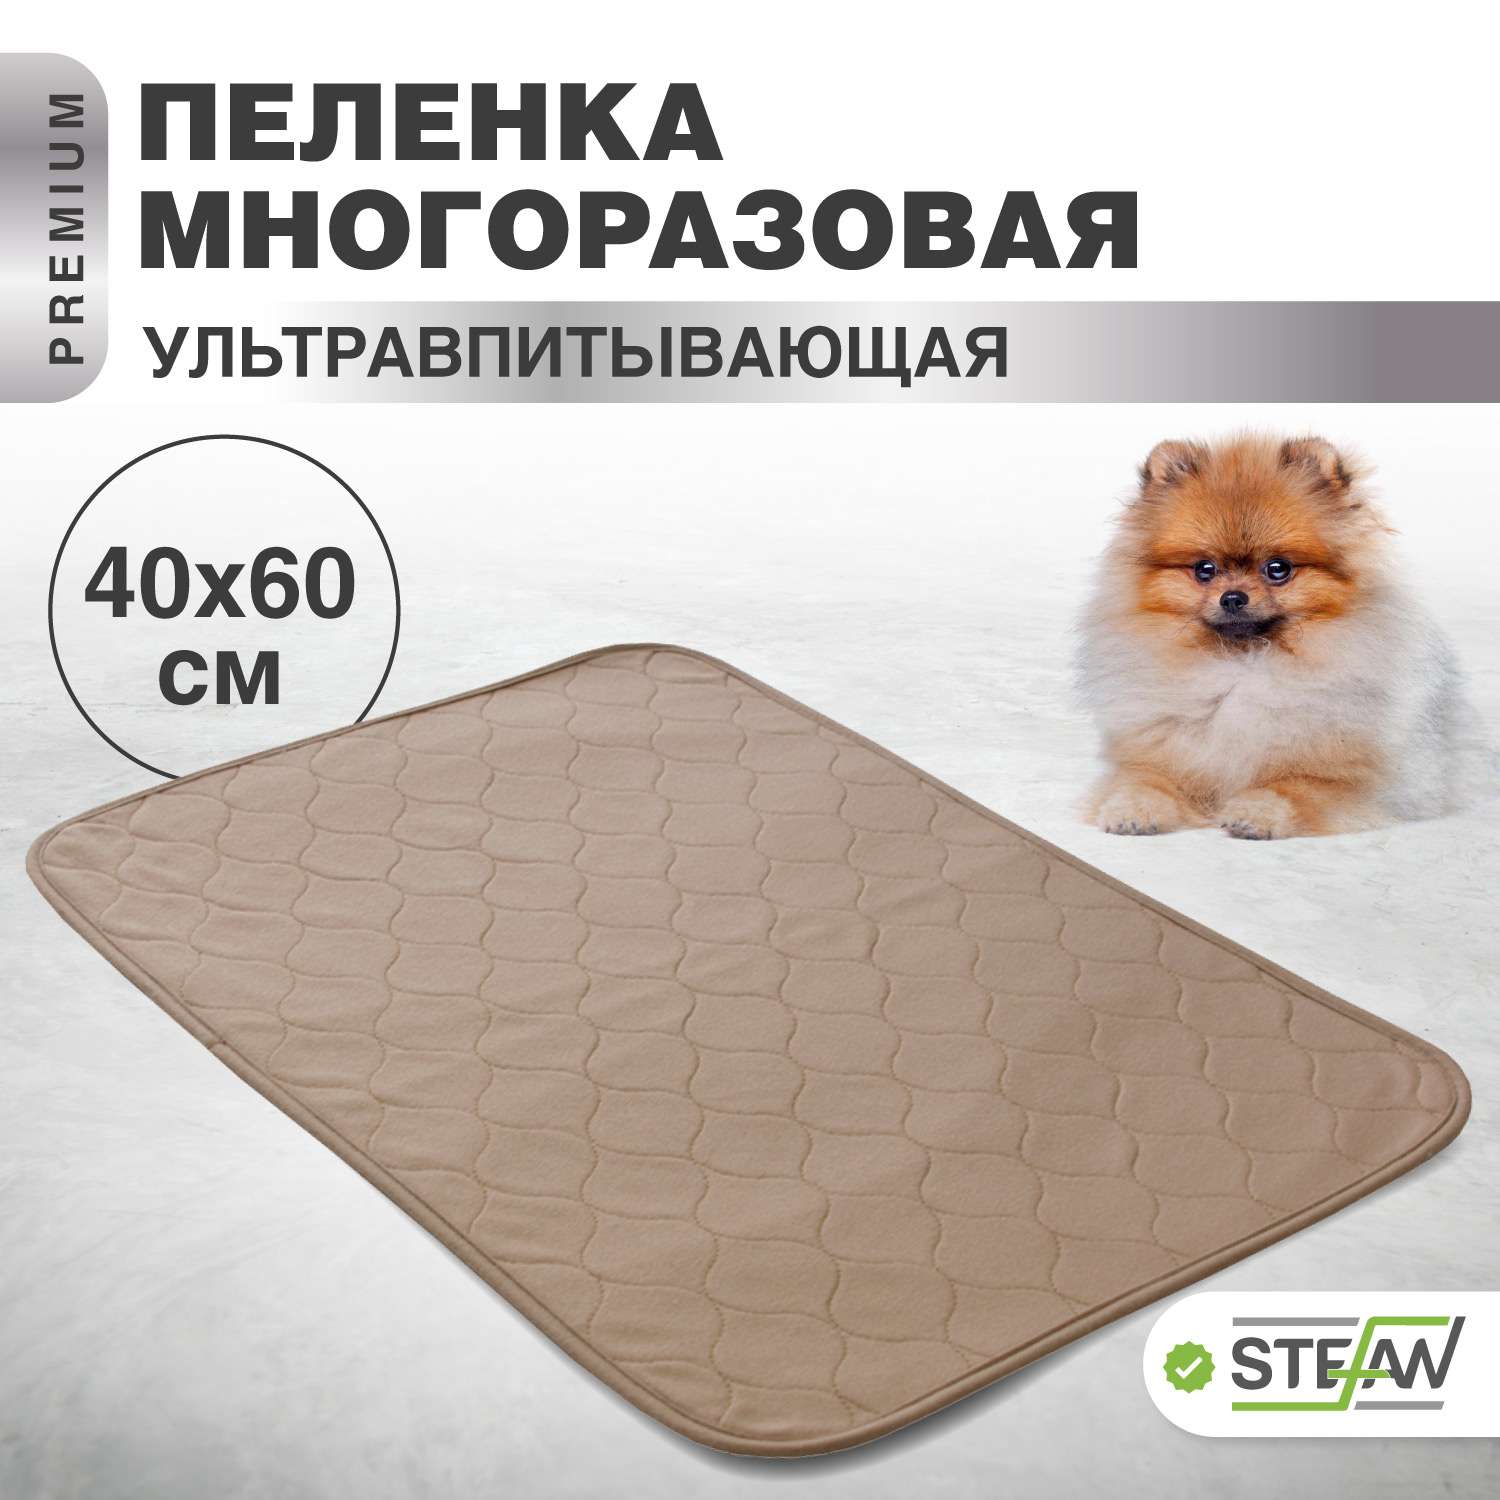 Пеленка для животных Stefan впитывающая многоразовая коричневая однотонная 40х60 см - фото 1